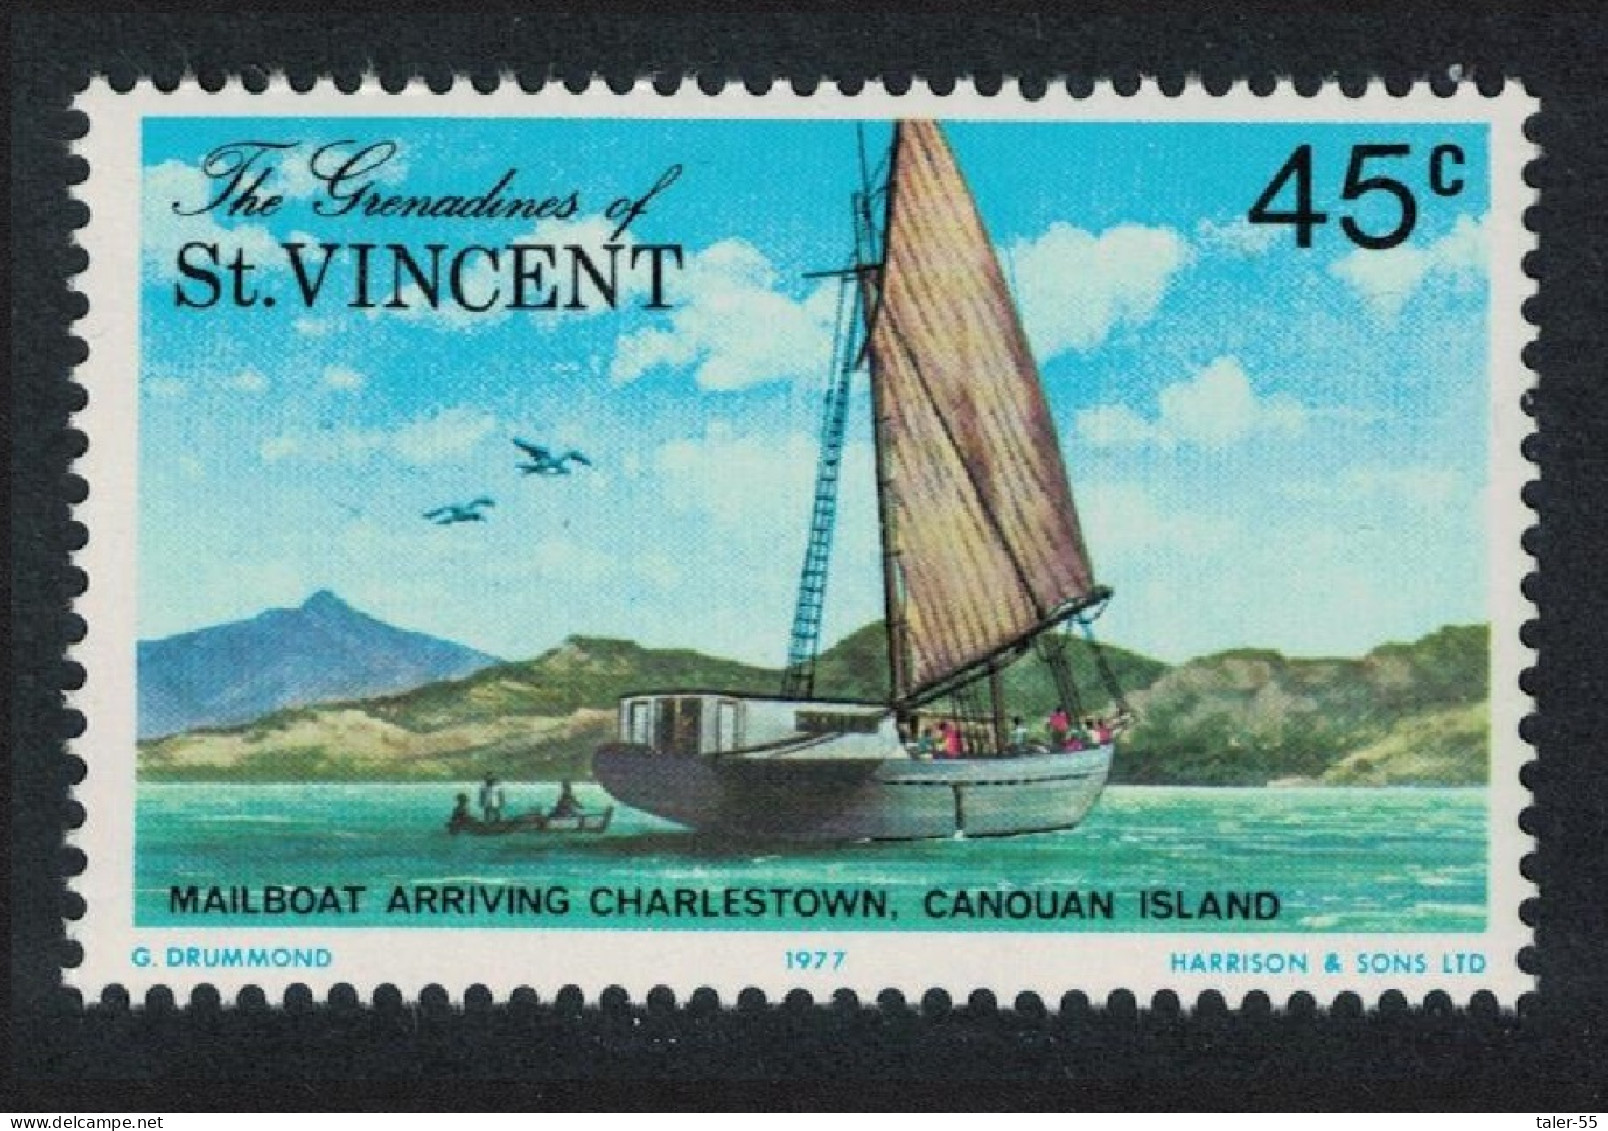 St. Vincent Gren Mail Schooner Arriving At Charlestown 1977 MNH SG#108 - St.Vincent & Grenadines